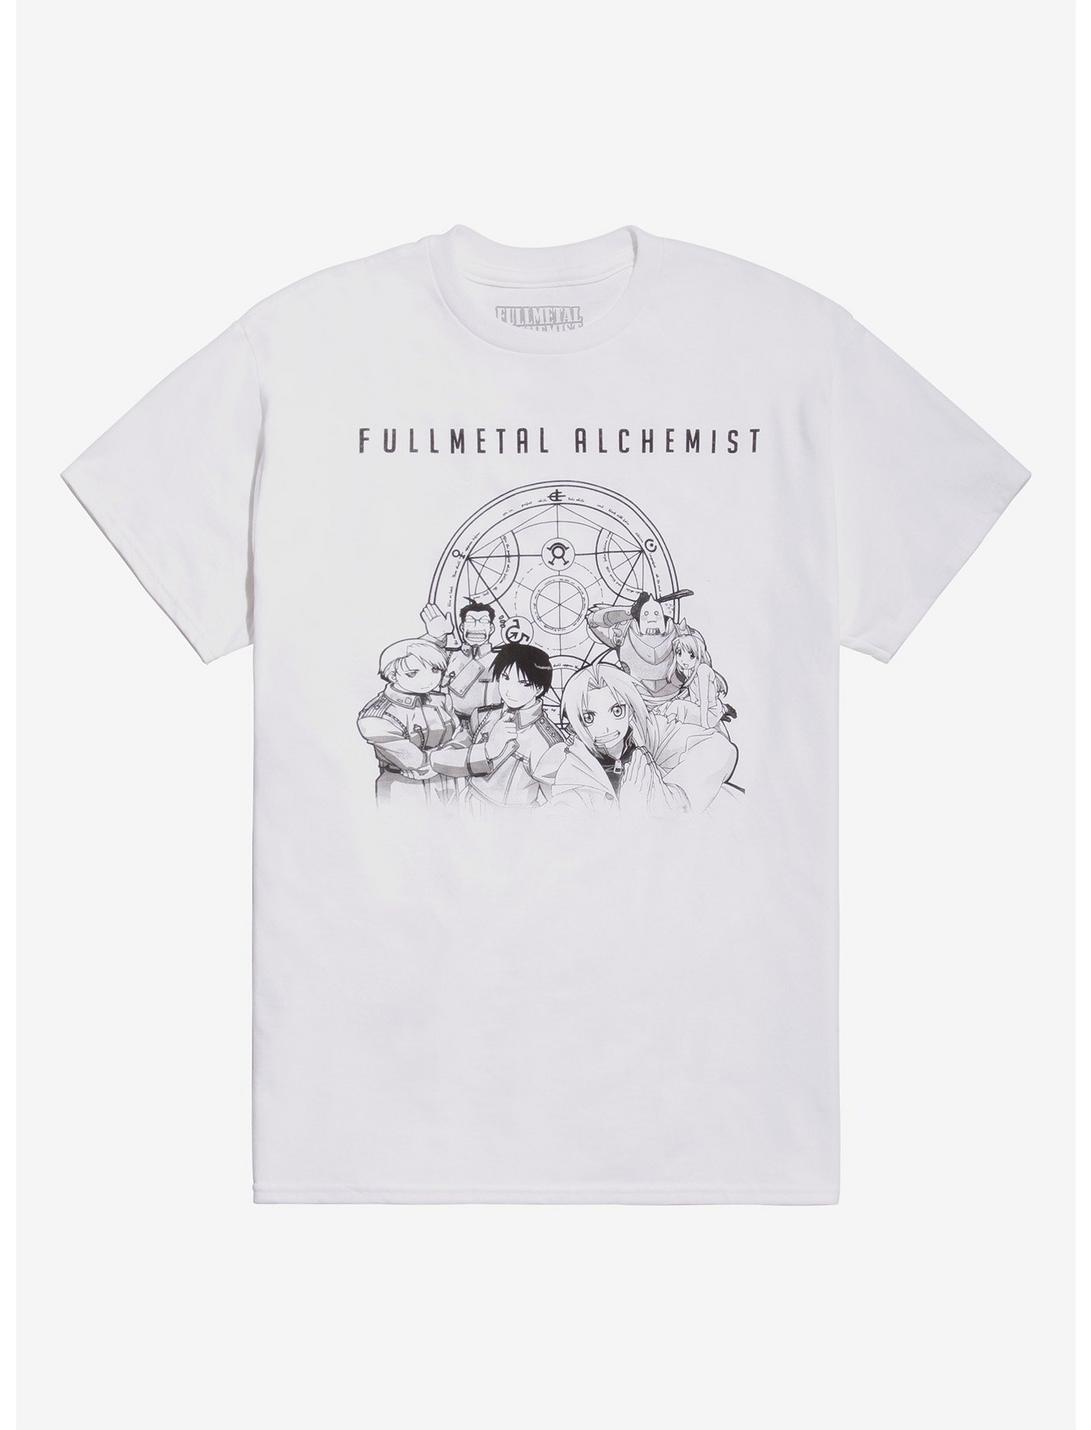 Fullmetal Alchemist Group Black & White T-Shirt, WHITE, hi-res